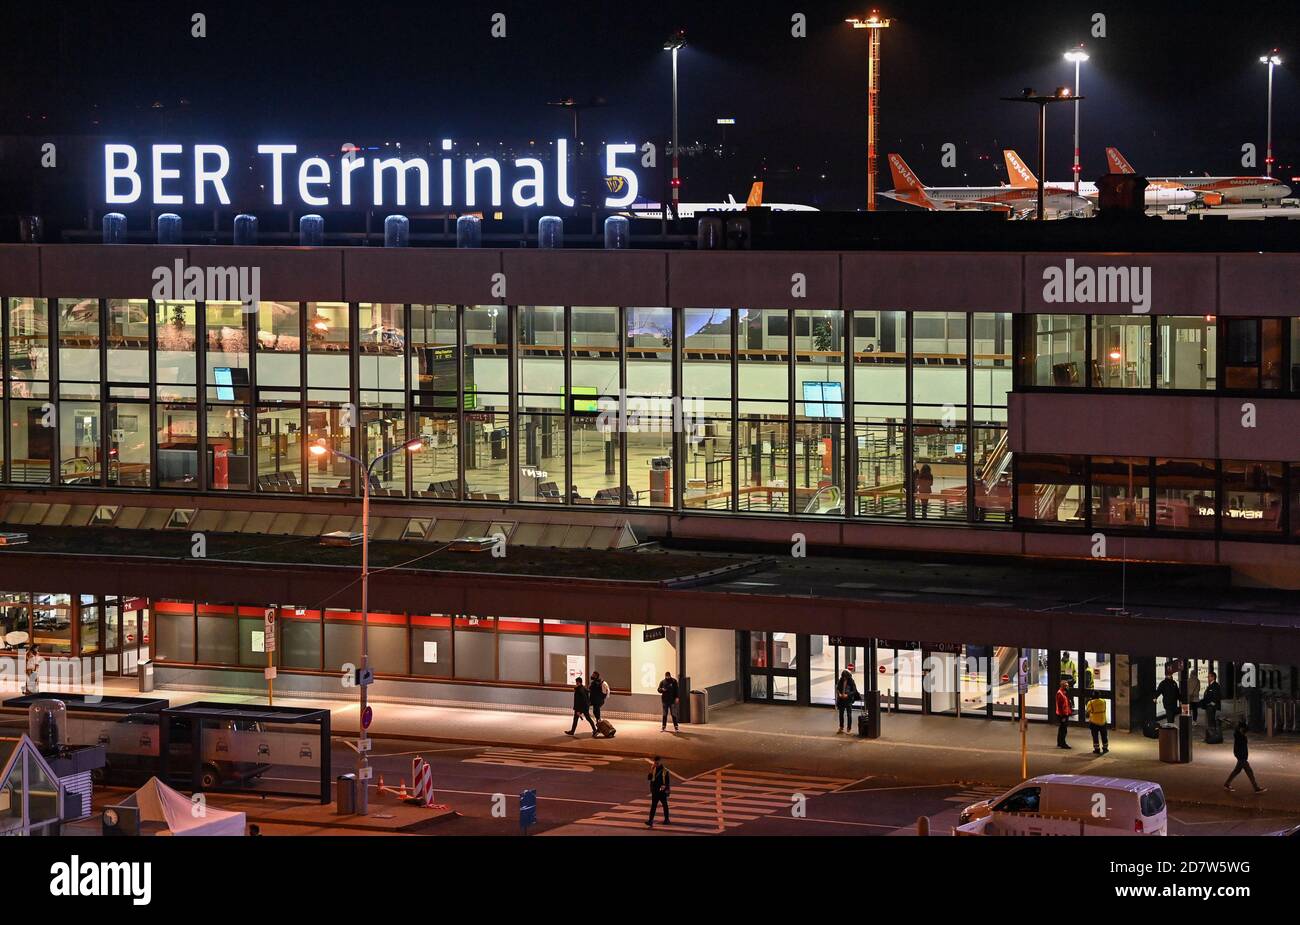 25 ottobre 2020, Brandeburgo, Schönefeld: La nuova scritta "BER Terminal 5" si illumina di sera sul tetto dell'ex aeroporto di Berlino Schönefeld. Agli aeroporti di Berlino viene data la nuova sigla BER. Pochi giorni prima dell'apertura del nuovo aeroporto di capitale, i codici precedenti TXL (Tegel) e SXF (Schoenefeld) non saranno più utilizzati quando l'orario invernale cambia. L'apertura del Capital Airport BER è prevista per il 31.10.2020. Foto: Patrick Pleul/dpa-Zentralbild/dpa Foto Stock